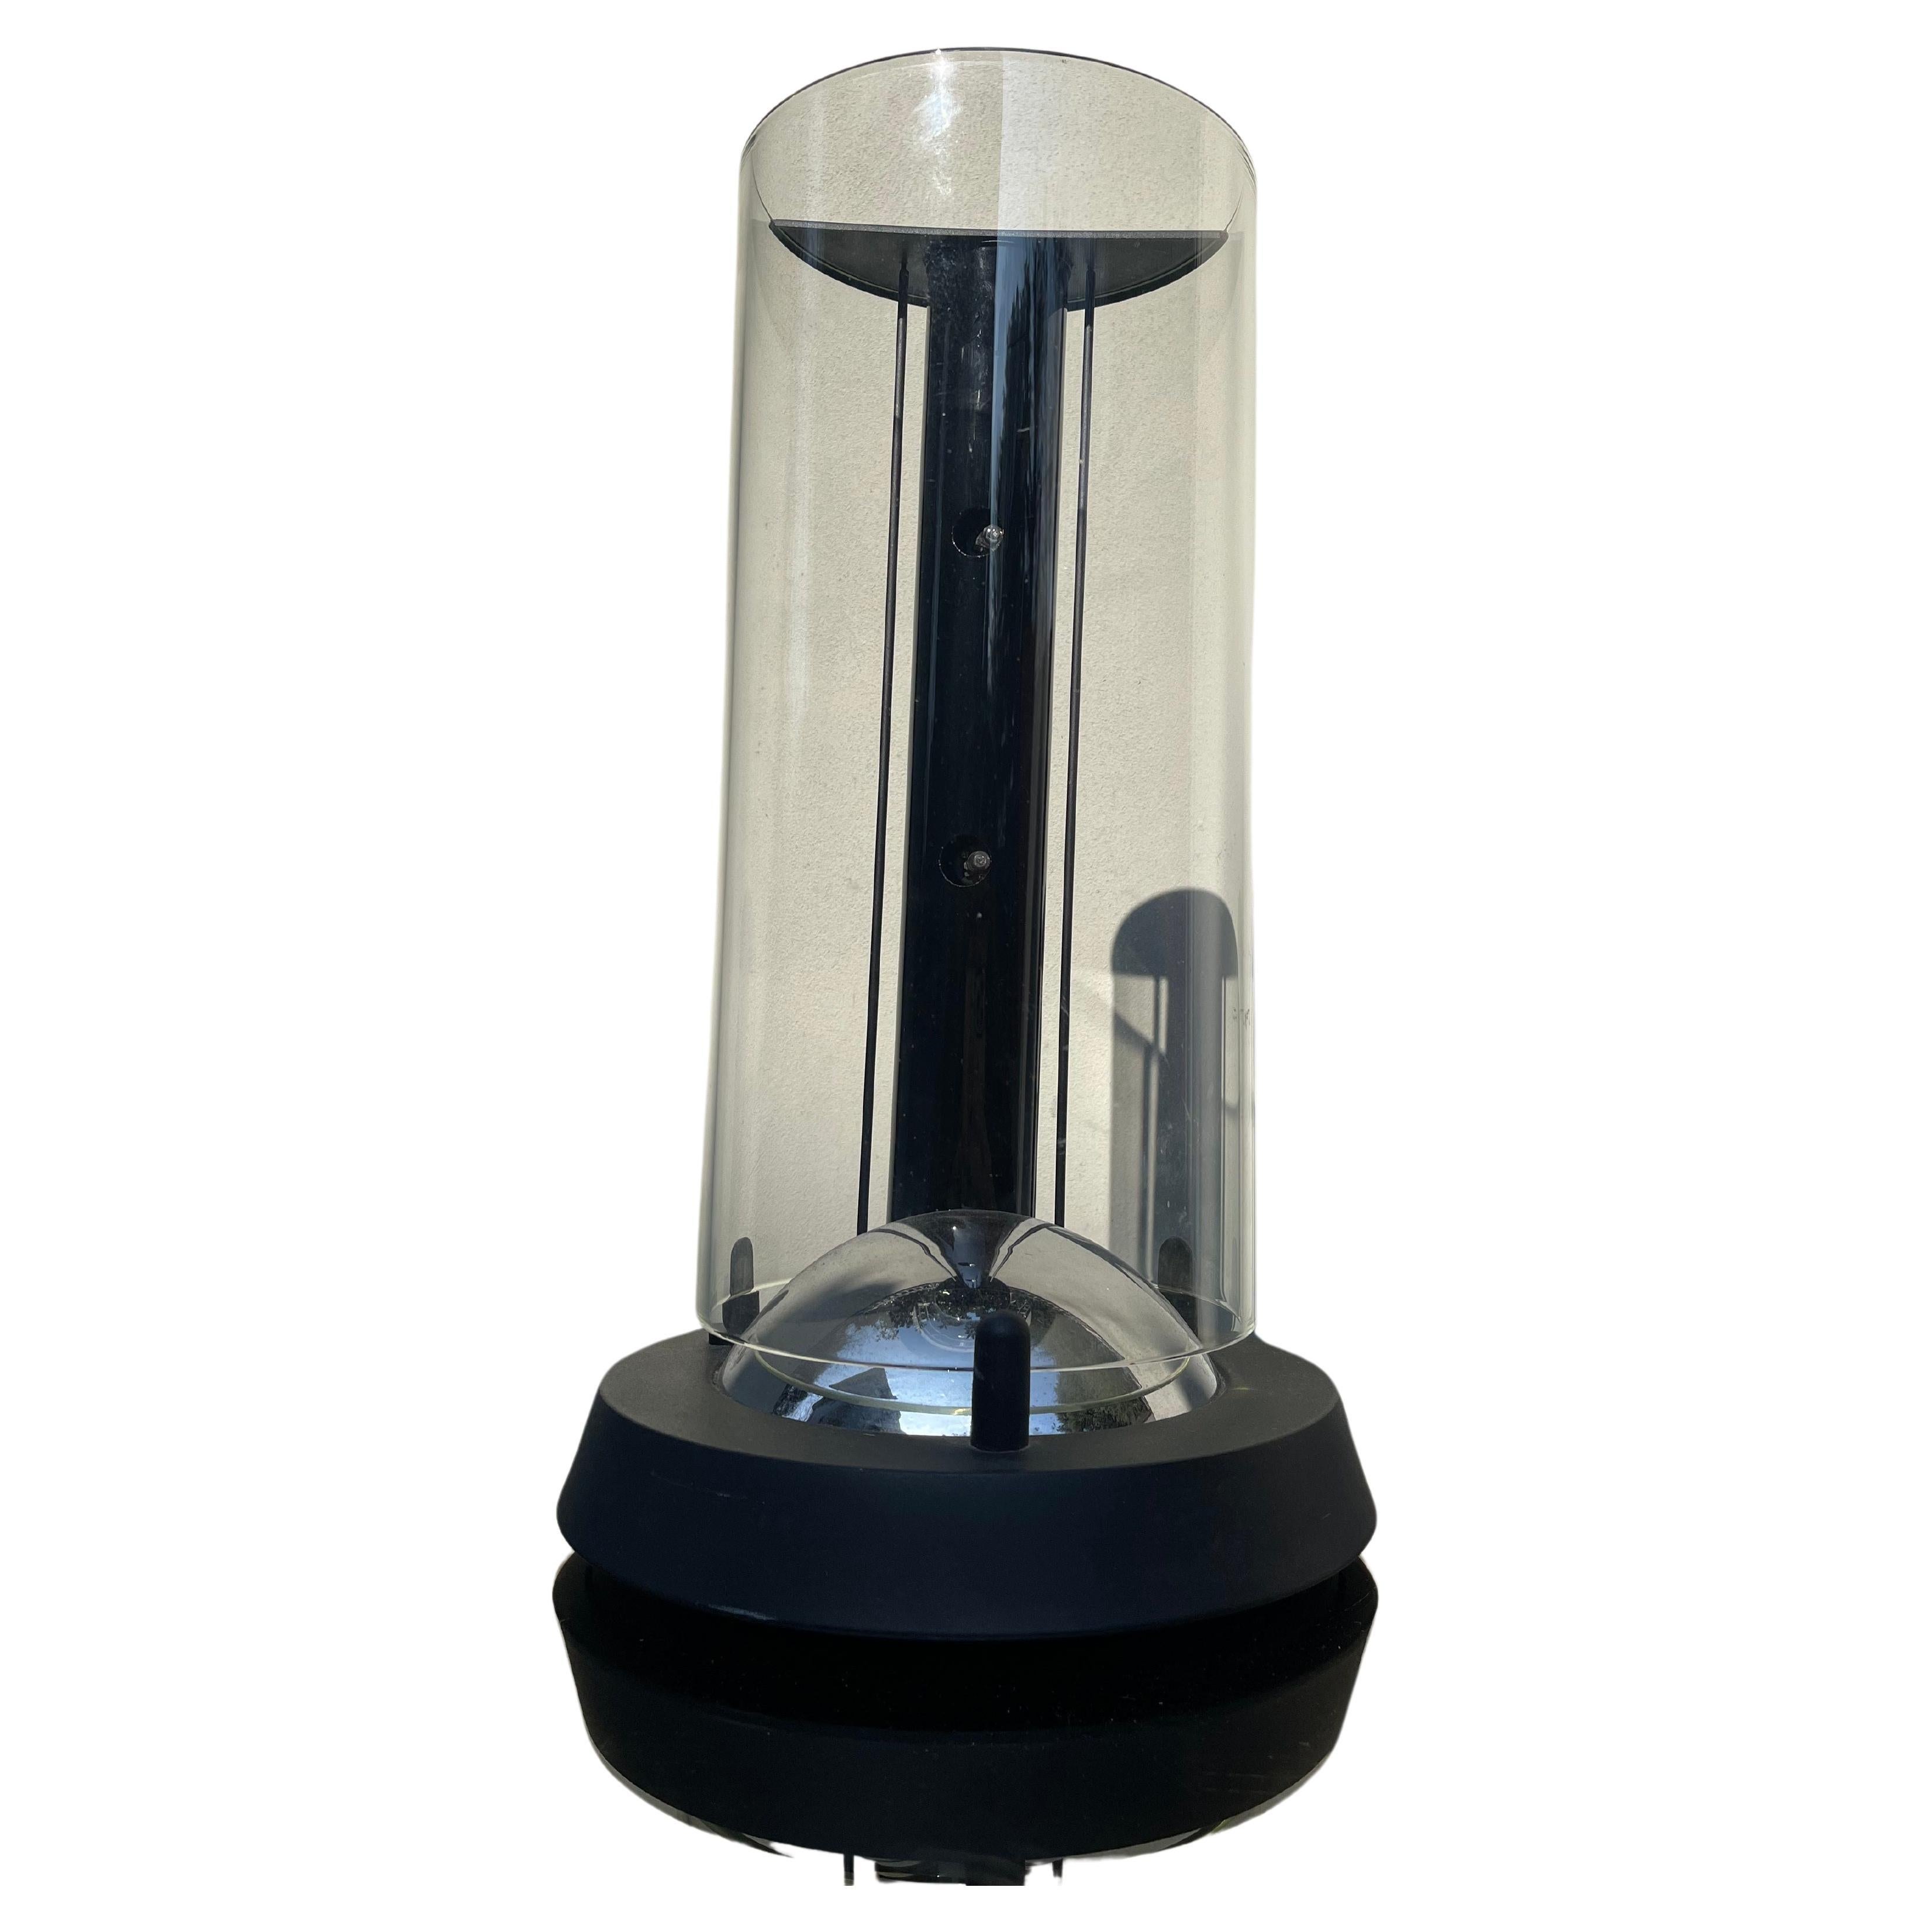 Lampe design fine anni 70 - vetro trasparente - luci alogene - design